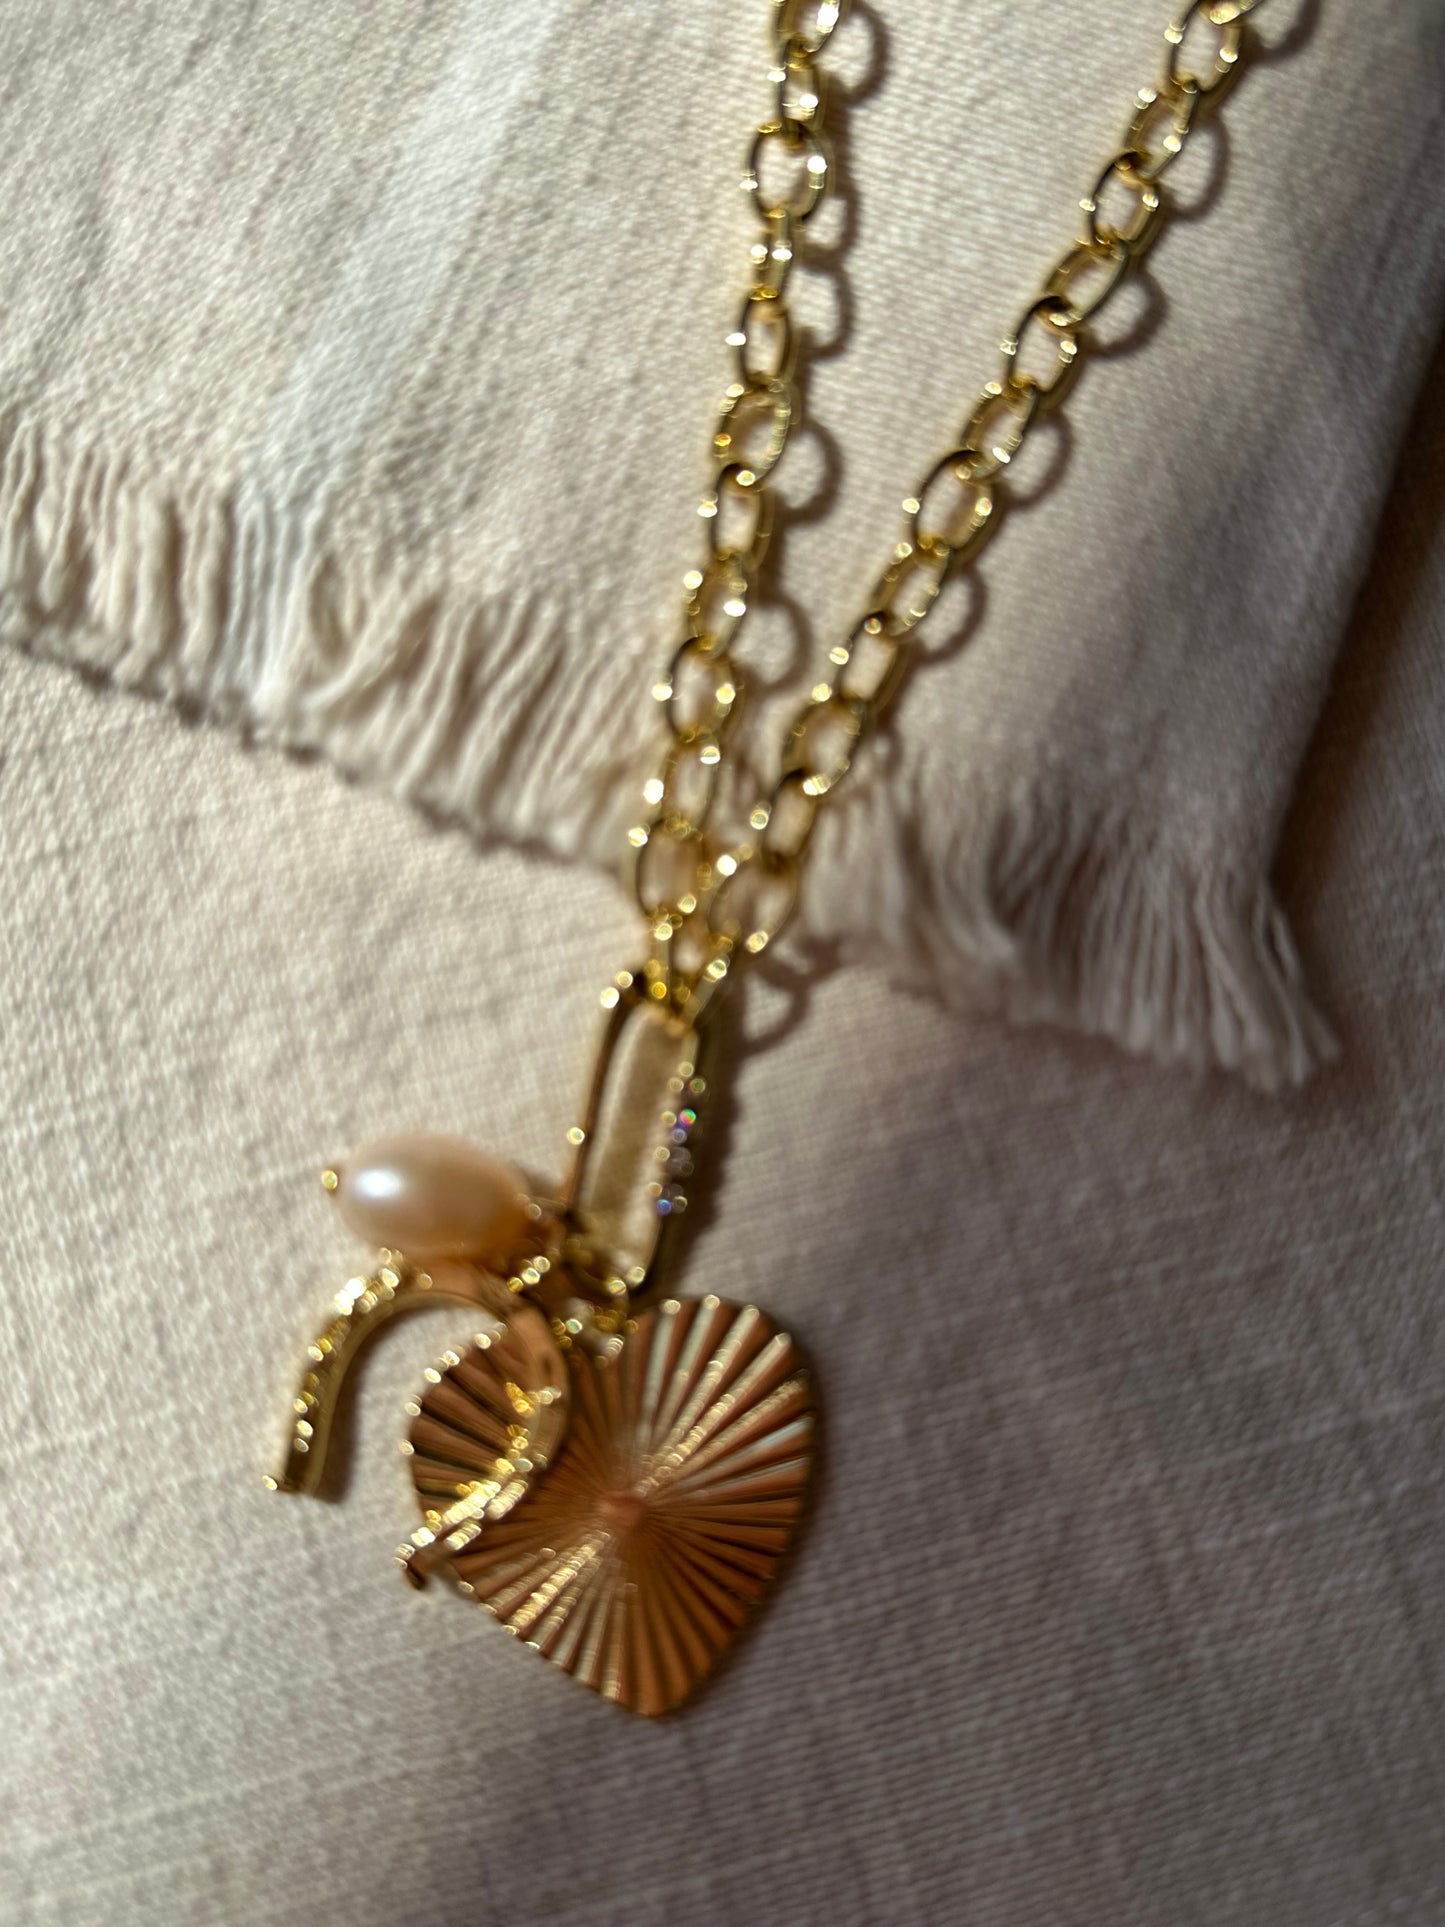 Golden horseshoe charm necklace